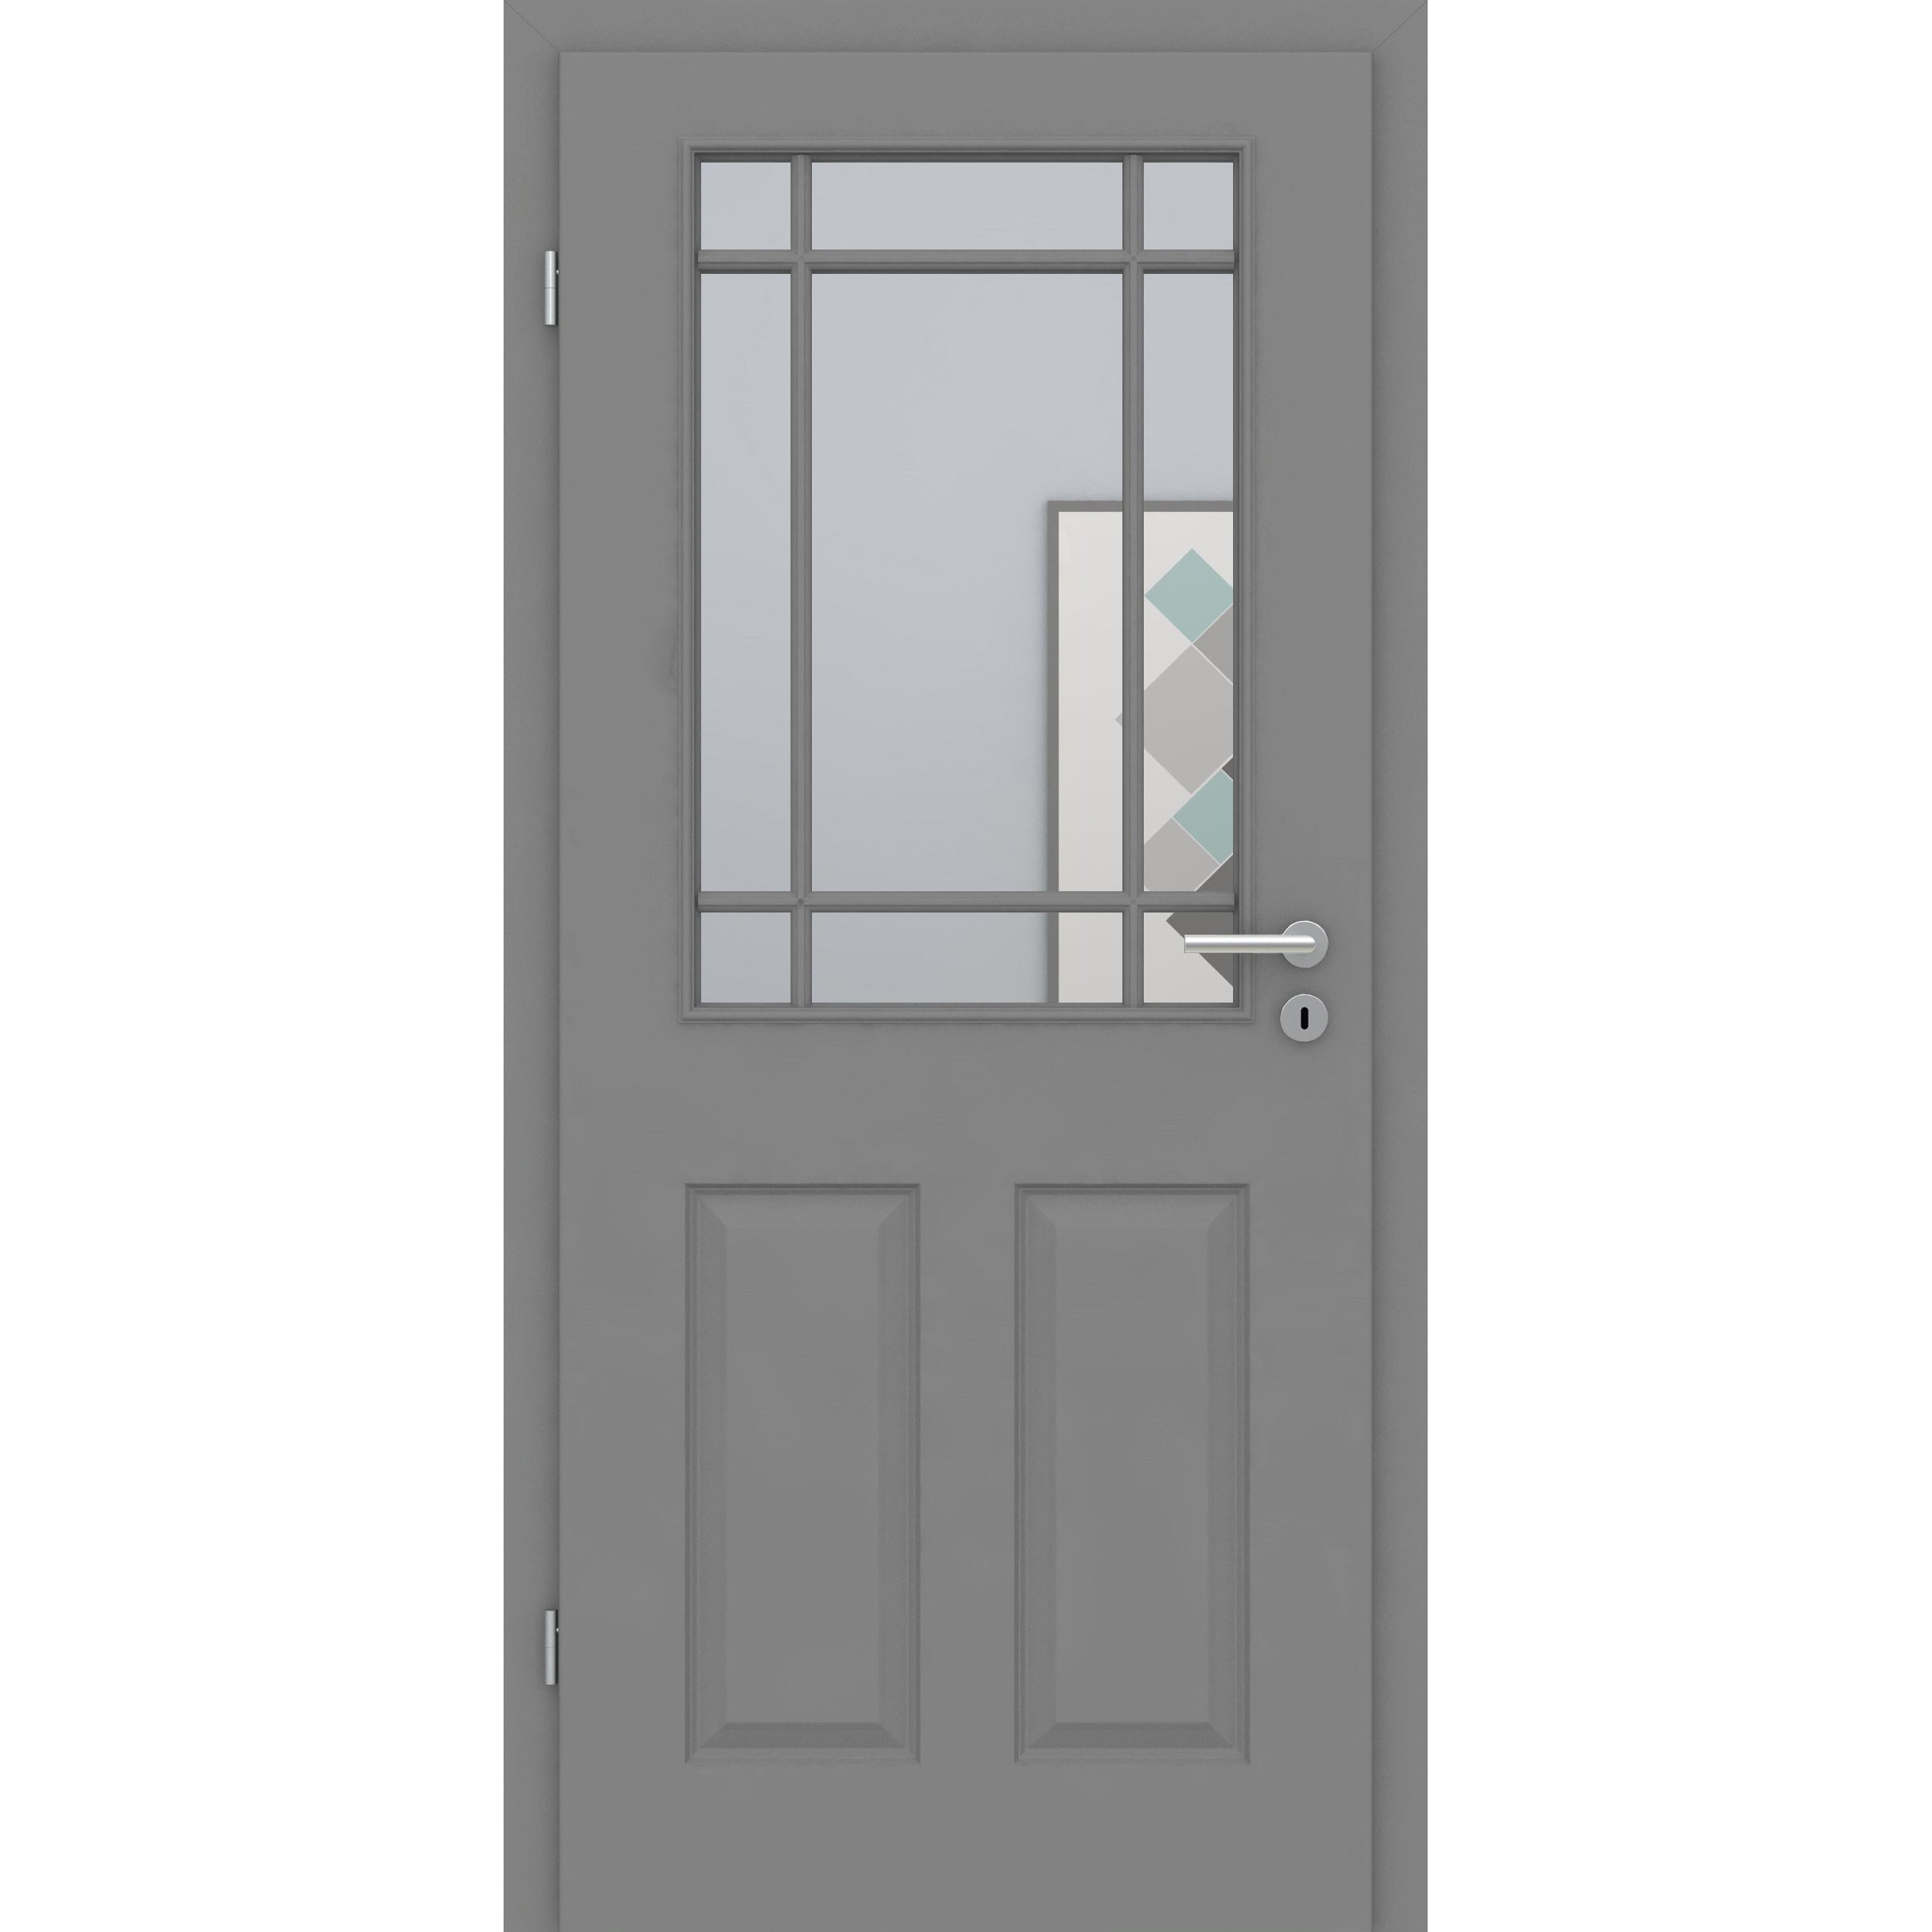 Zimmertür mit Zarge und Lichtausschnitt mit Sprossenrahmen klassisch grau 4 Kassetten Designkante - Modell Stiltür K47LASPK